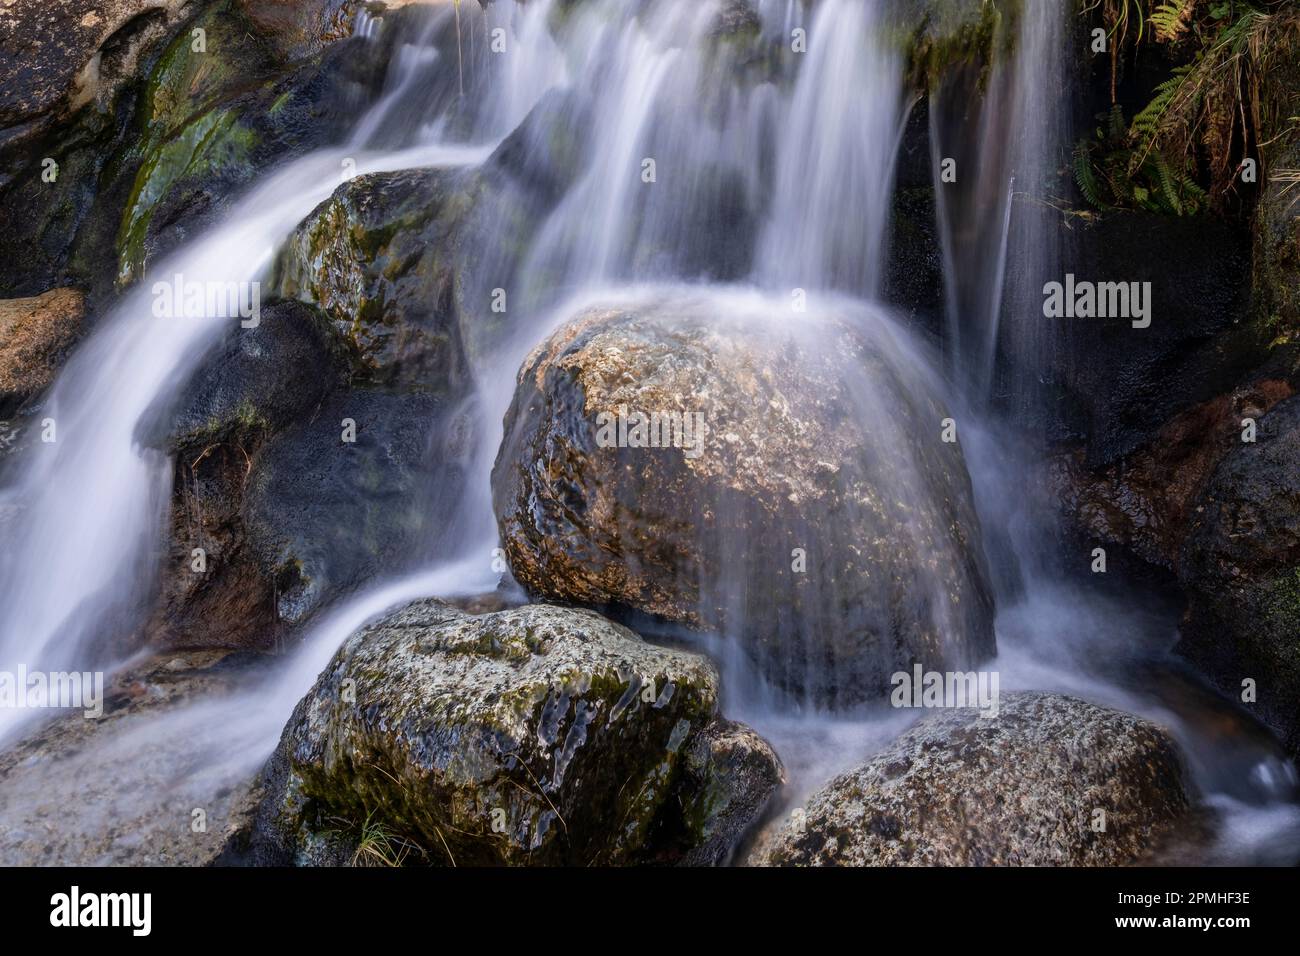 Dettaglio della cascata in CWM Glas Mawr, sopra il Passo di Llanberis, Parco Nazionale di Snowdonia, Eryri, Galles del Nord, Regno Unito, Europa Foto Stock